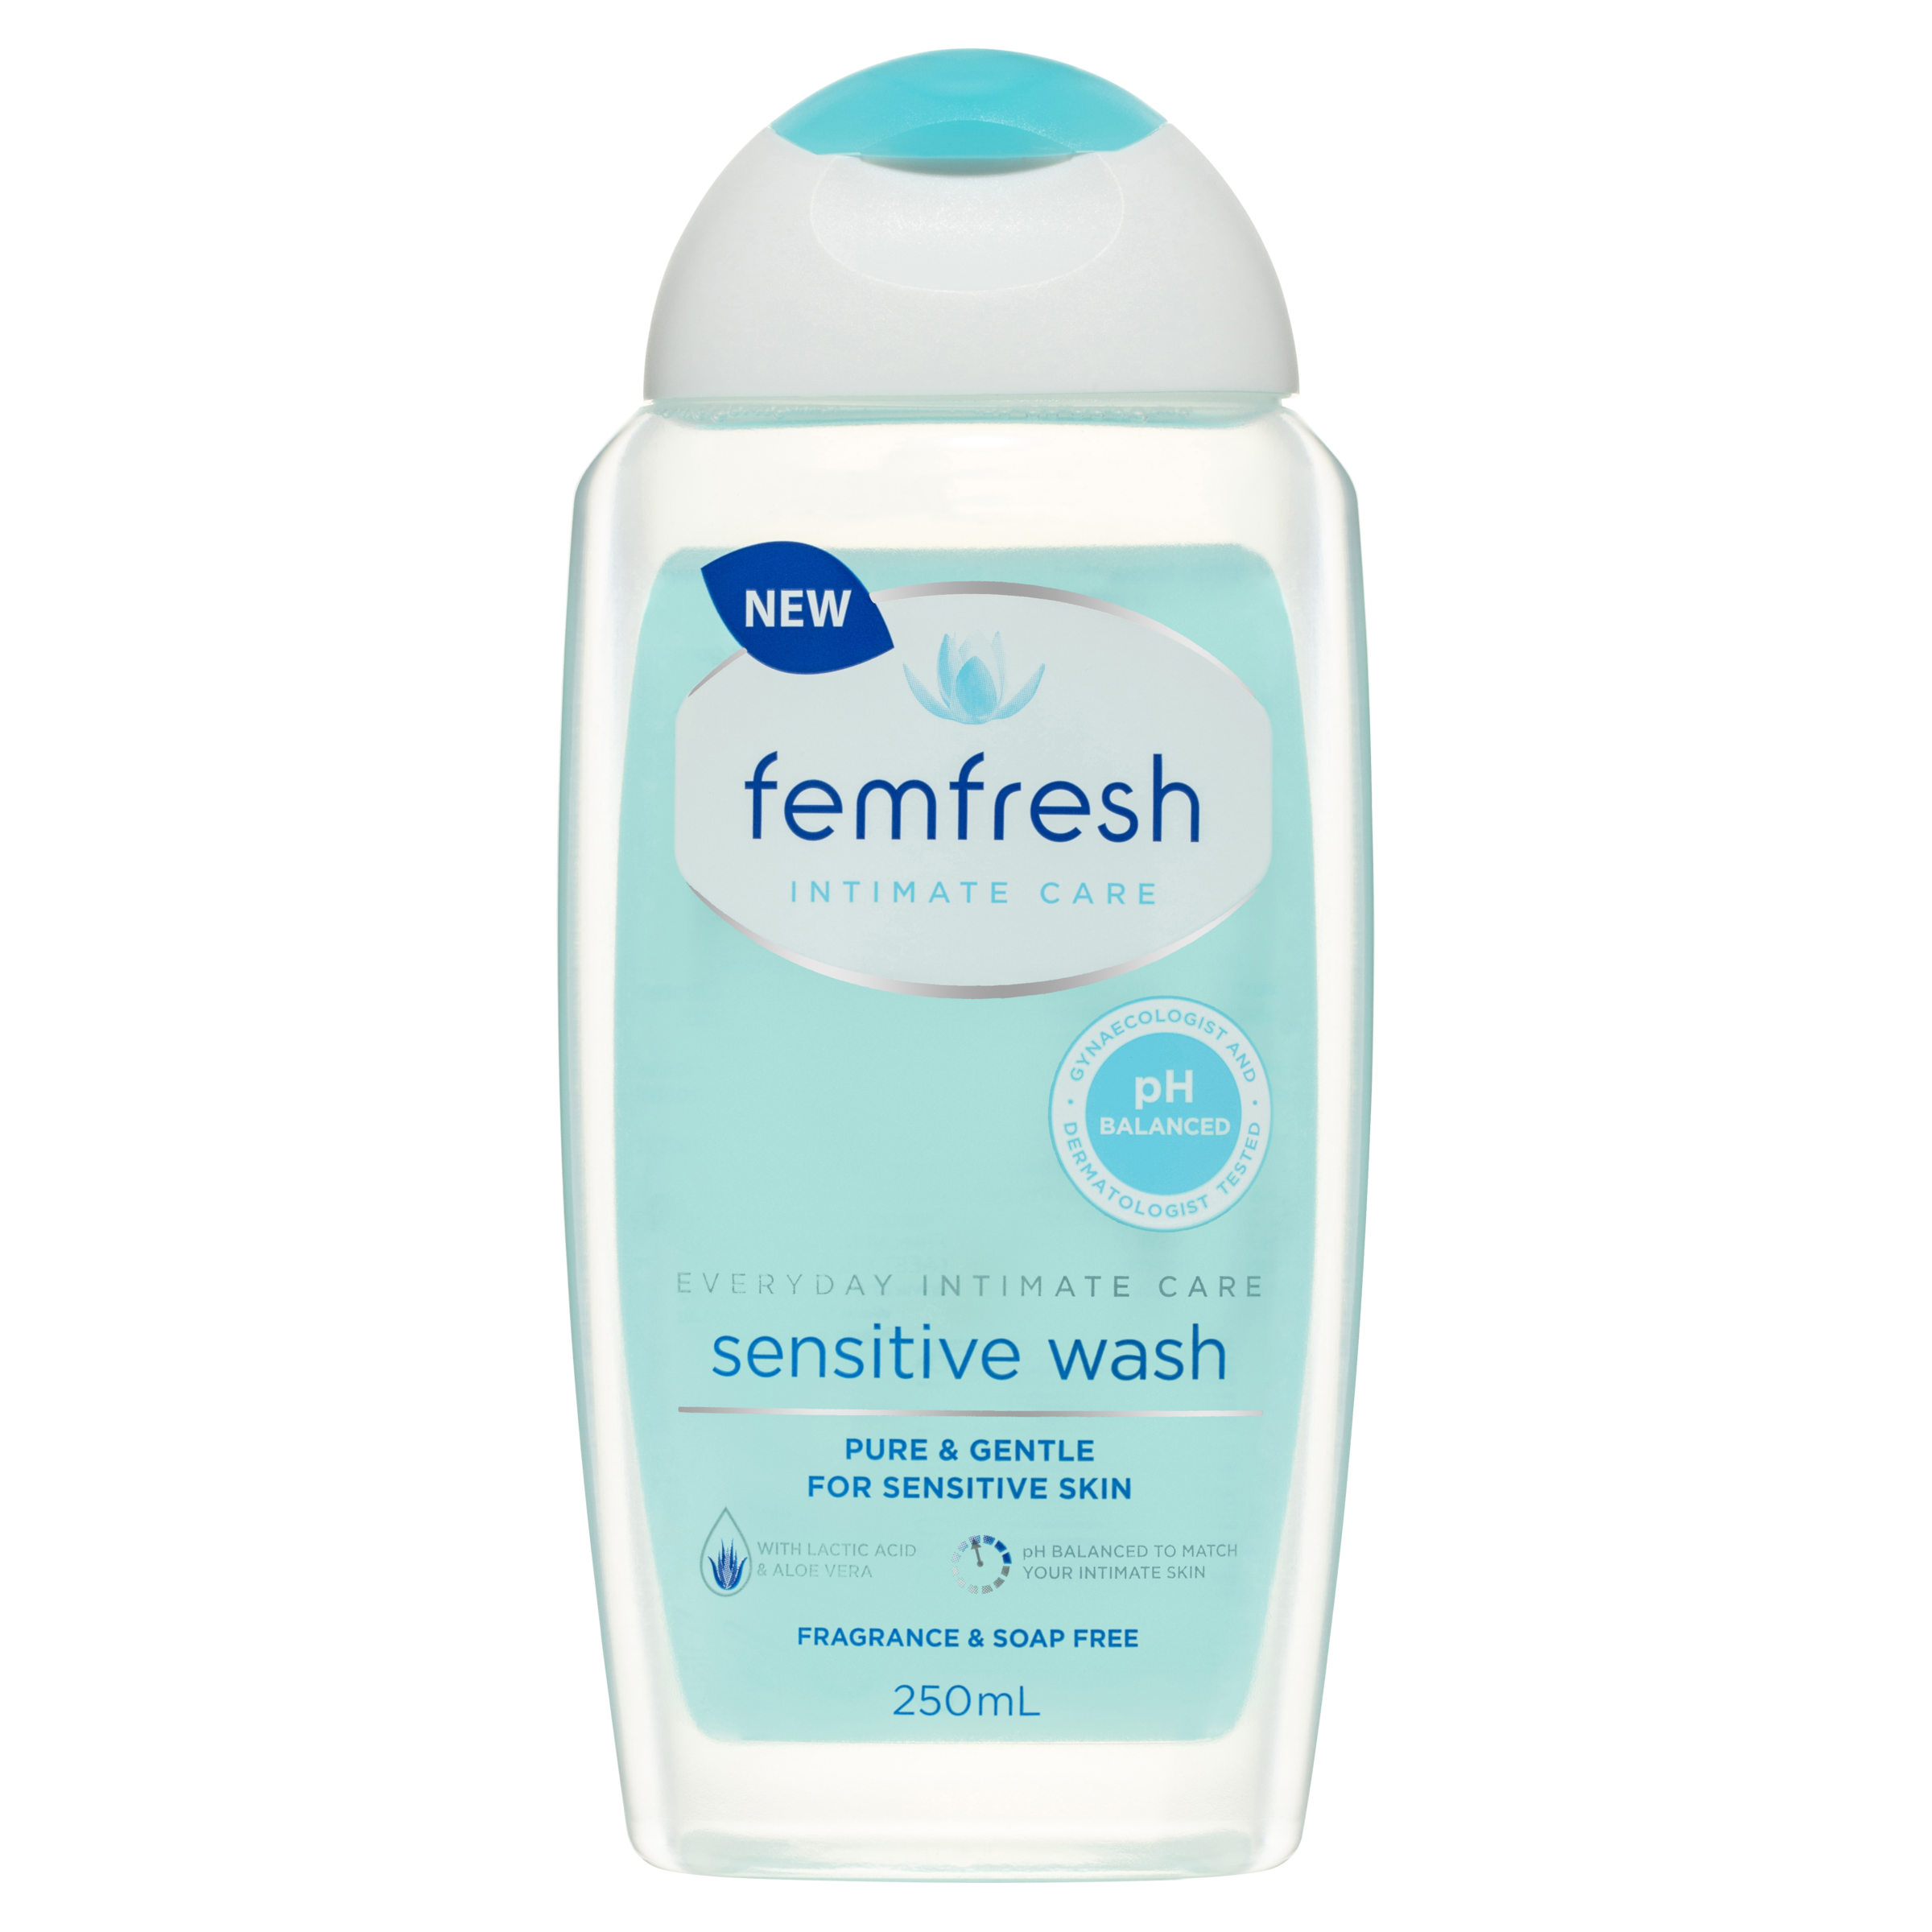 Femfresh Intimate Care Sensitive Wash Reviews